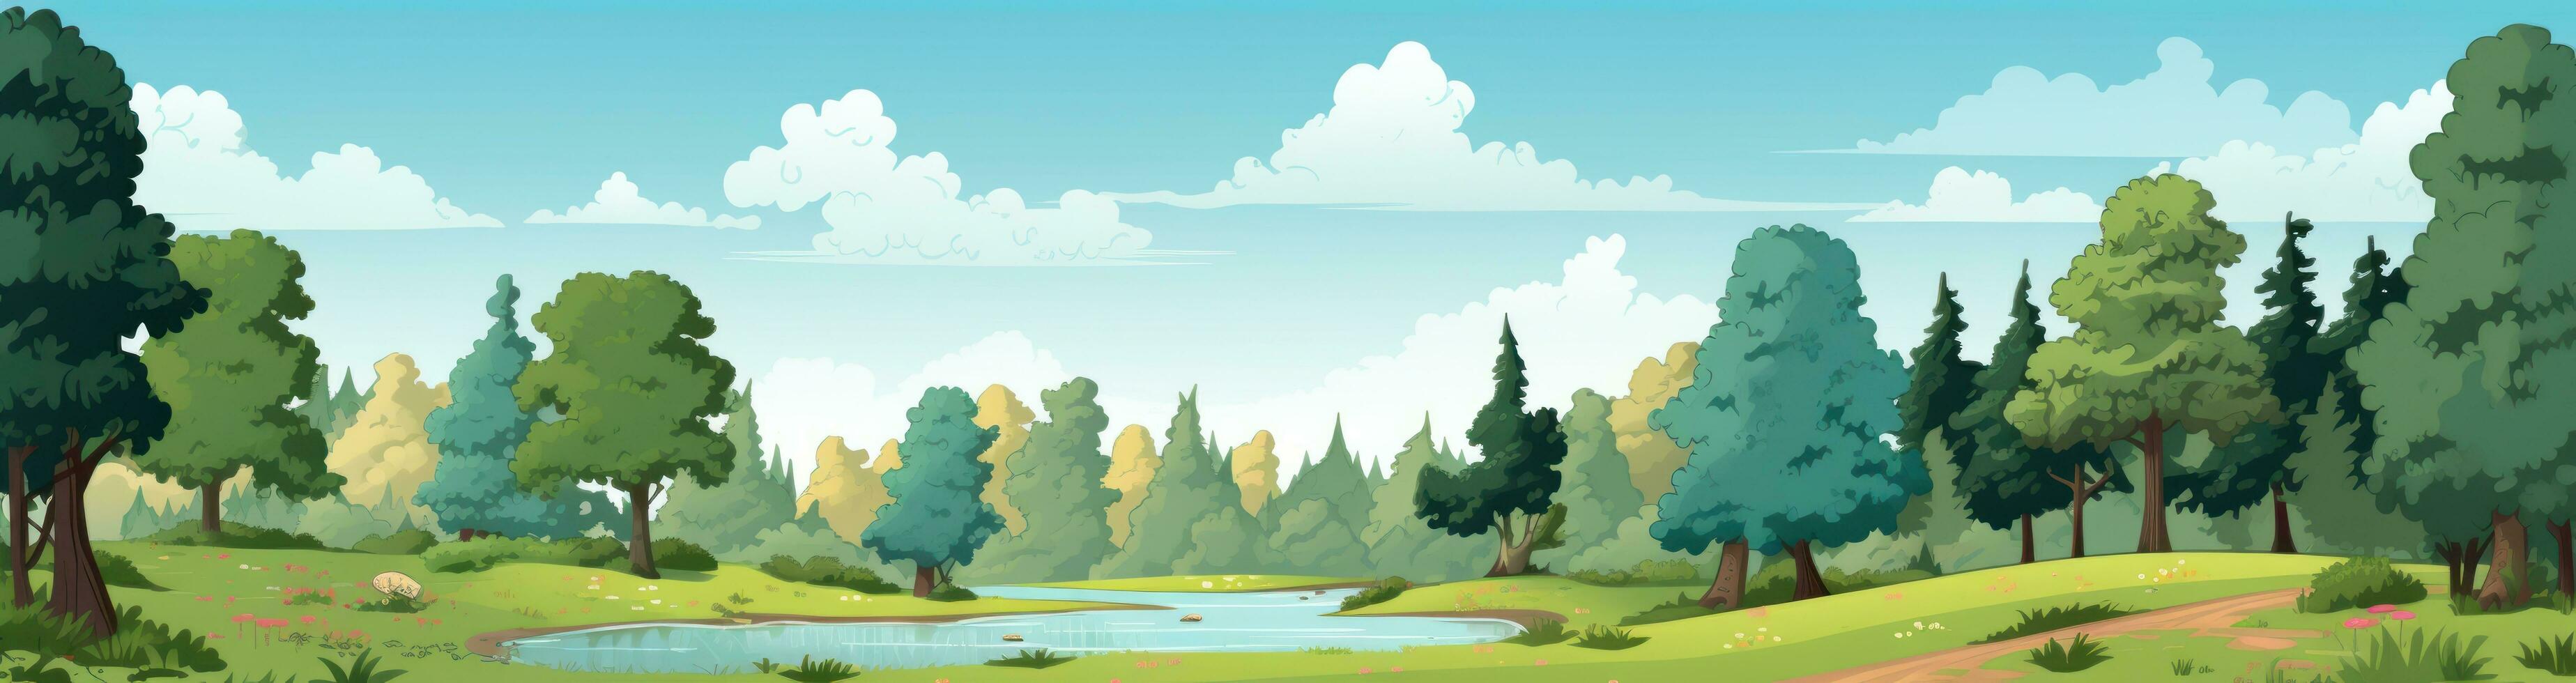 dibujos animados bosque ilustración foto